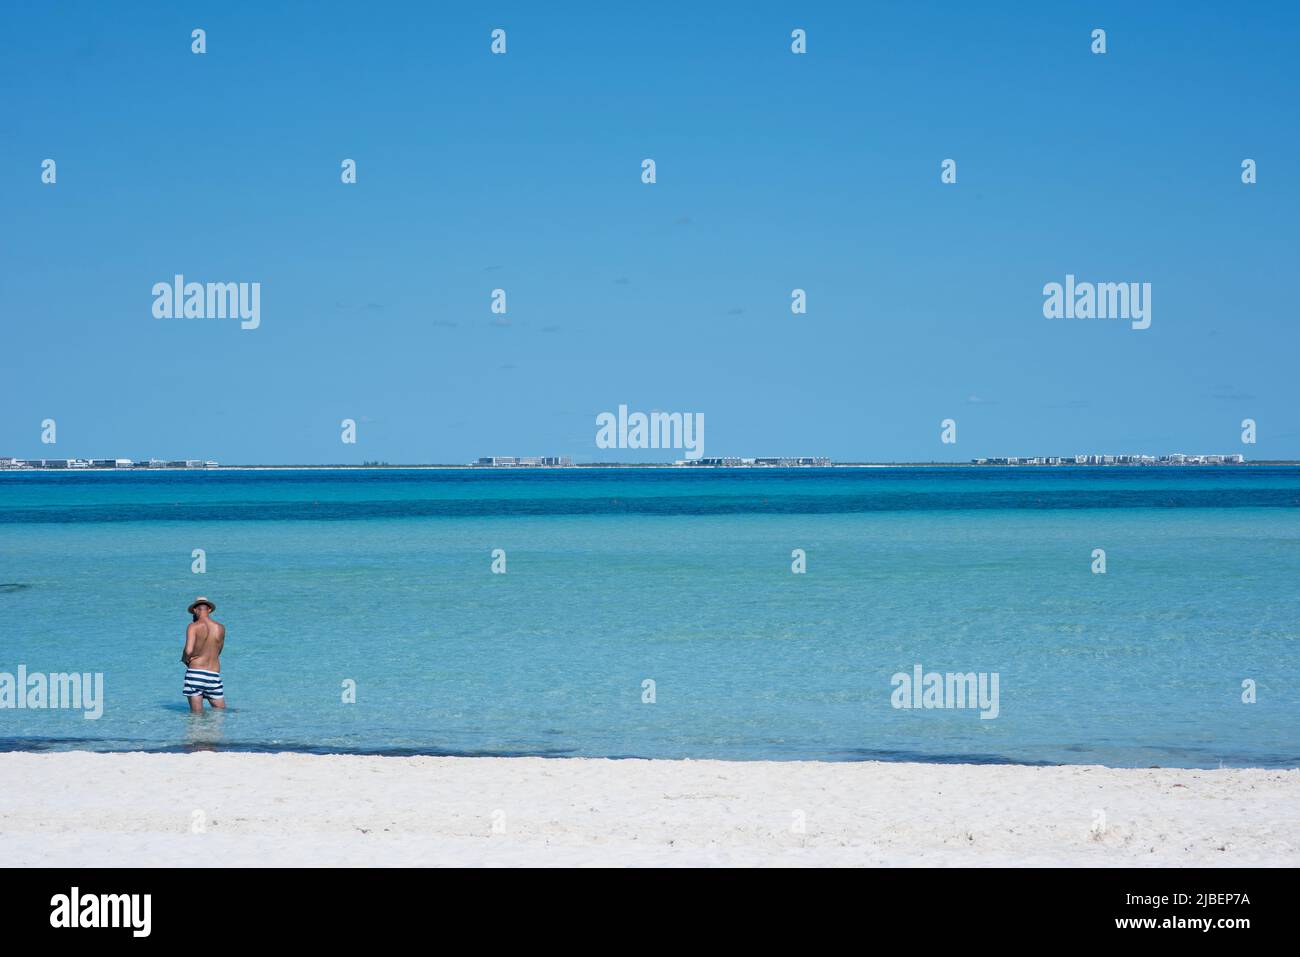 Vista trasera de un hombre parado en la playa en un traje de baño observando el horizonte sobre el Mar Caribe Foto de stock